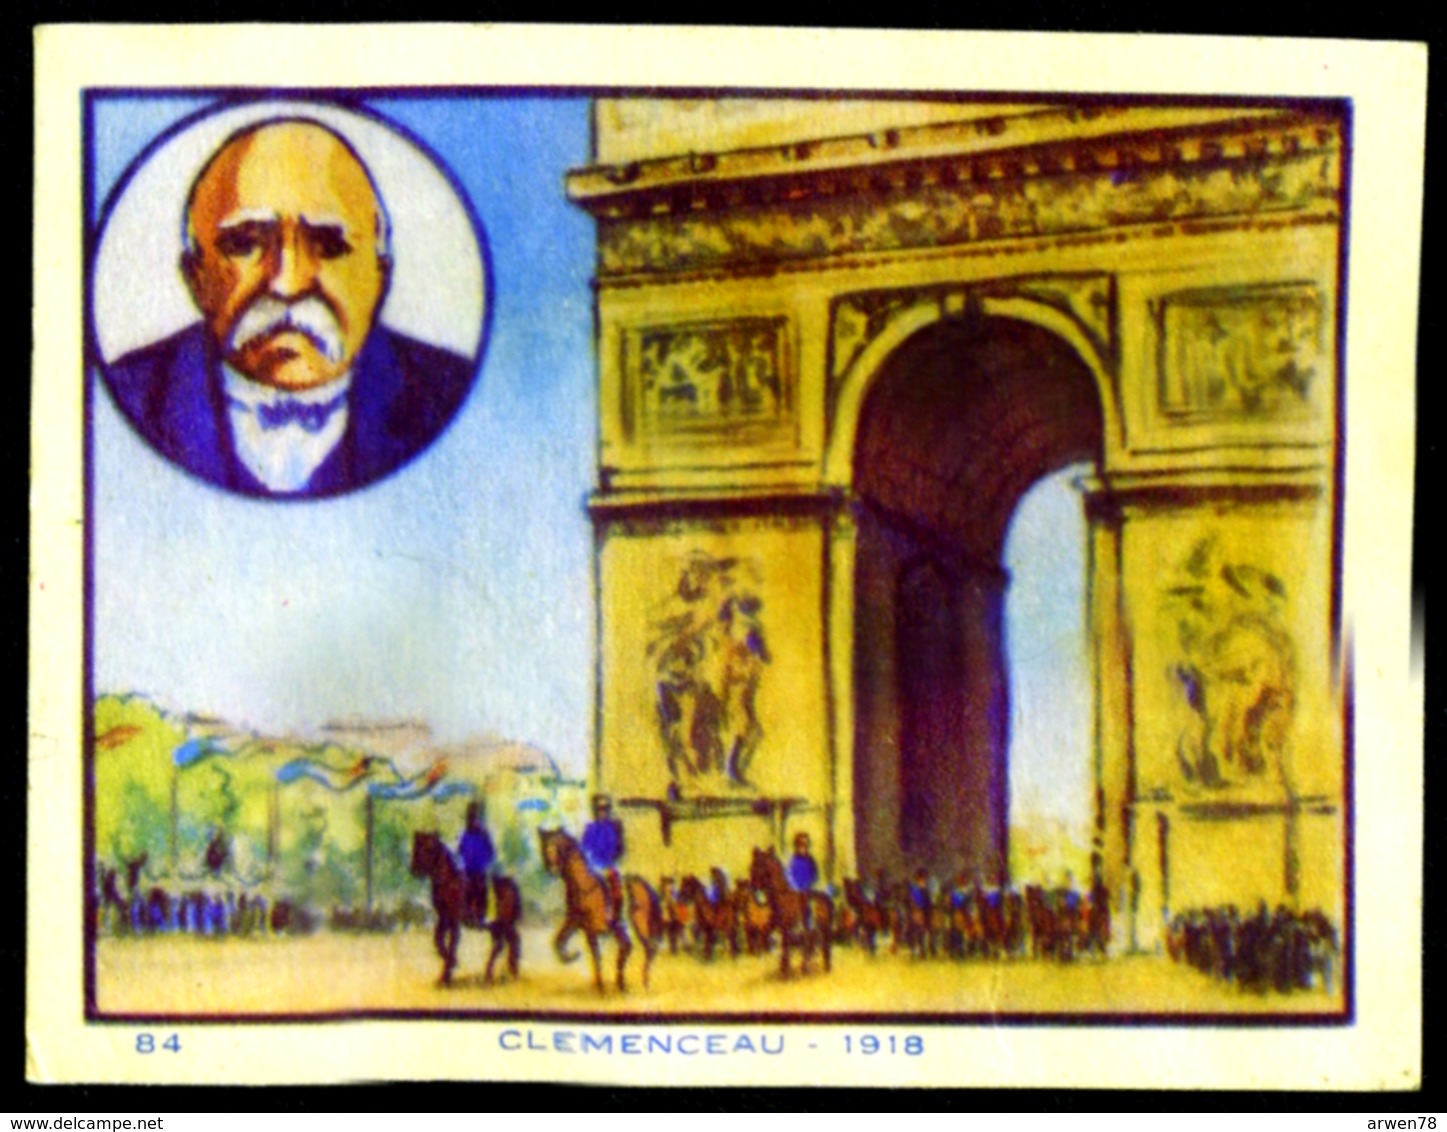 Image Steiner Histoire De France Clemenceau Paris Arc De Triomphe 1918 - Histoire